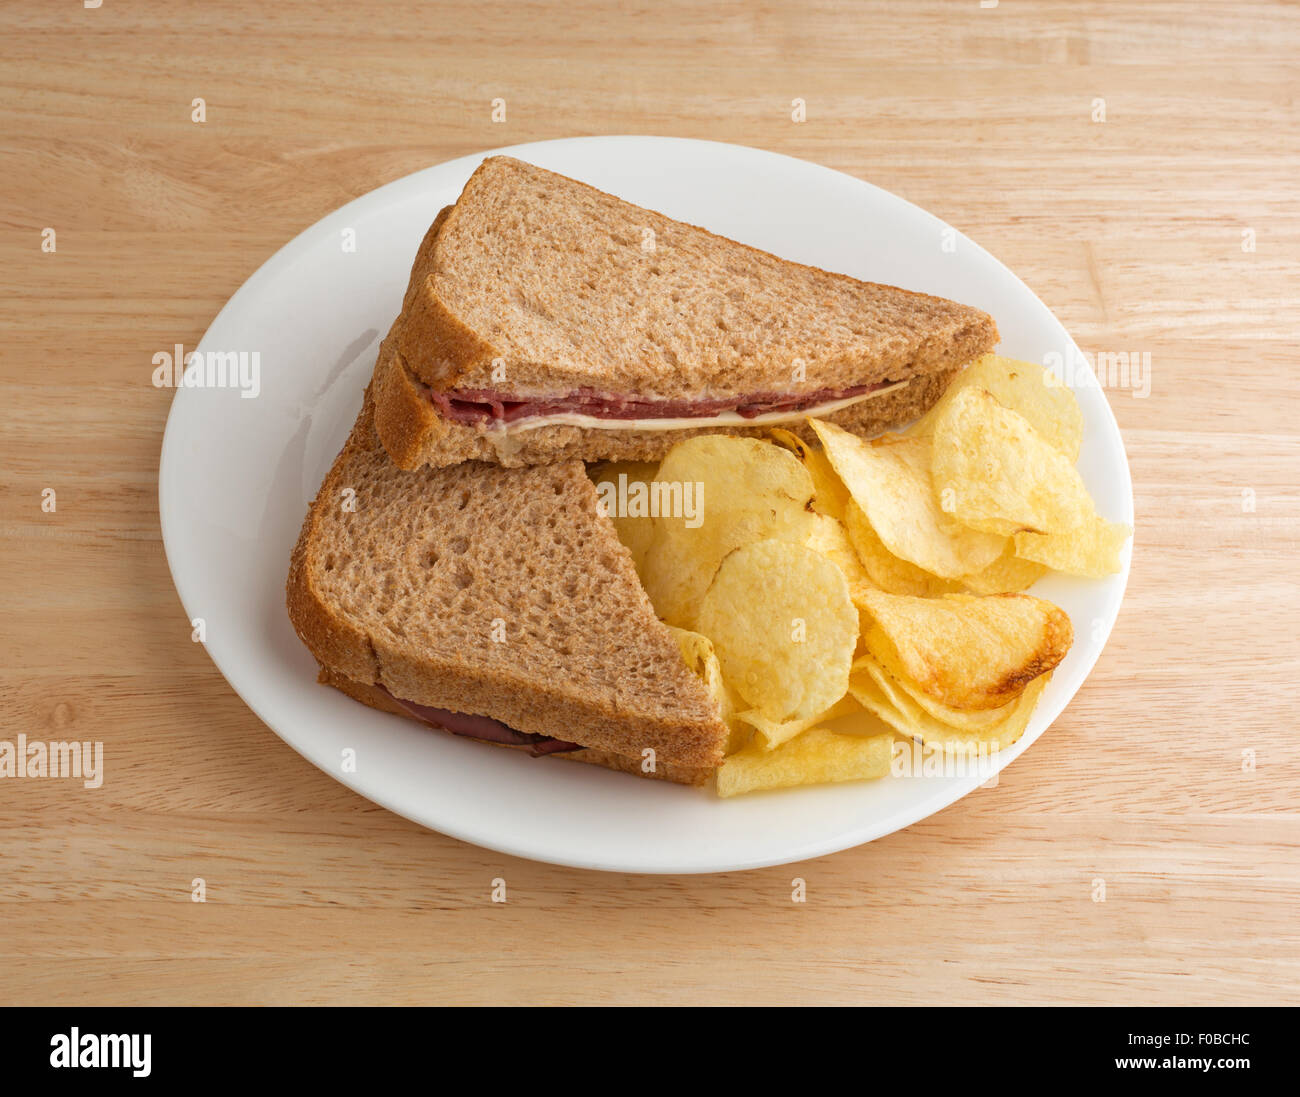 Un pain de blé rôti de bœuf sandwich avec du fromage blanc et la mayonnaise et croustilles de pommes de terre sur une plaque blanche au sommet d'une table en bois. Banque D'Images